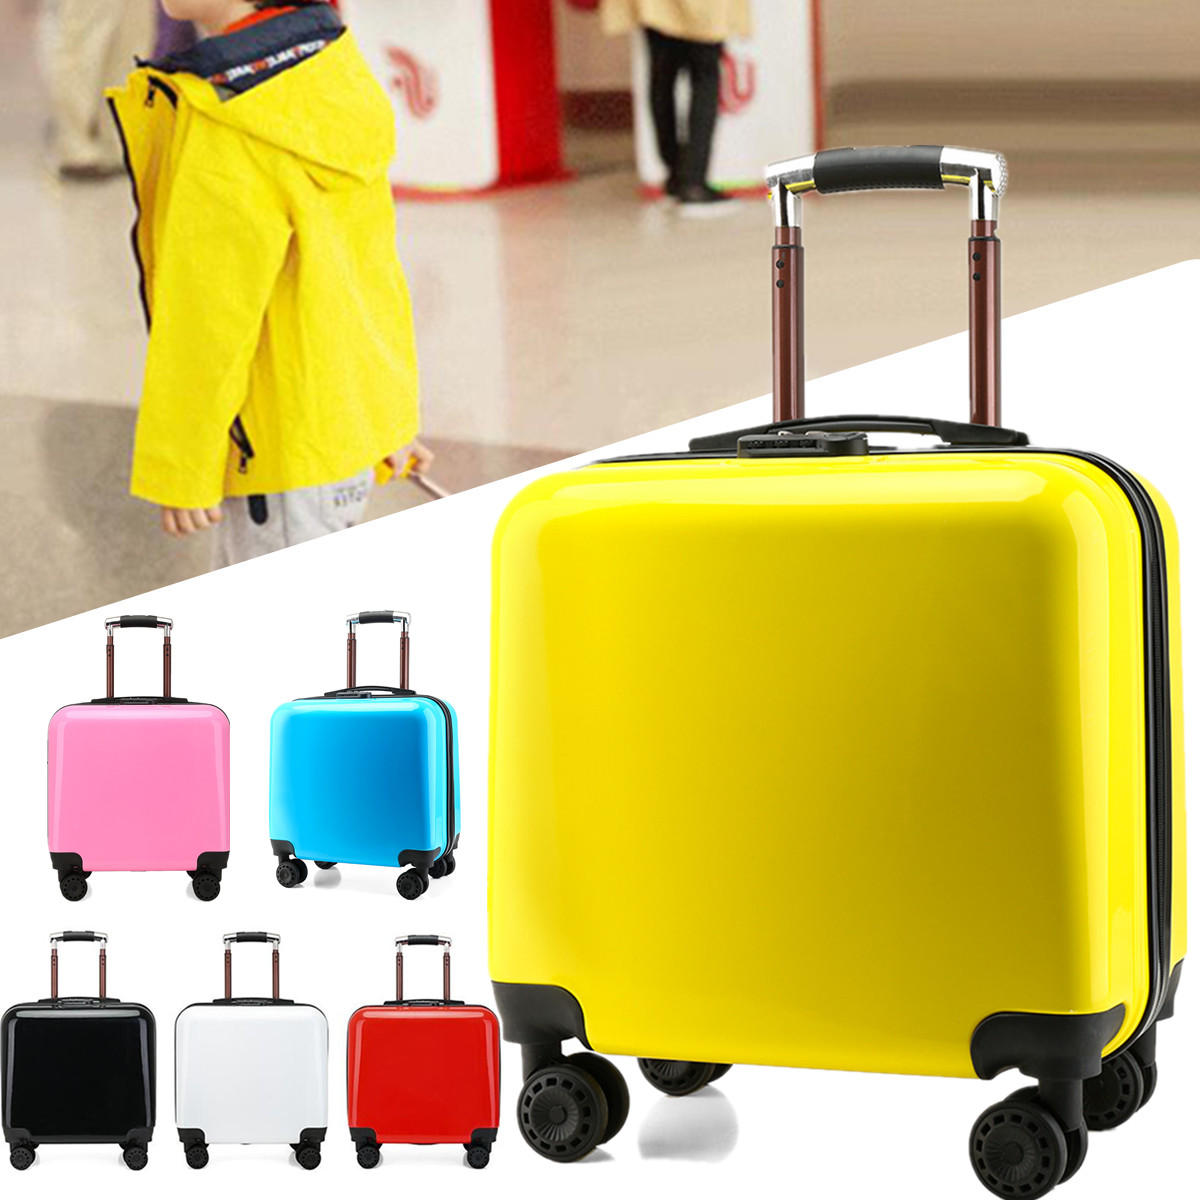 حقيبة سفر بحجم مقصورة قاسية بحجم 18 بوصة مع عجلات دوارة وخفيفة الوزن